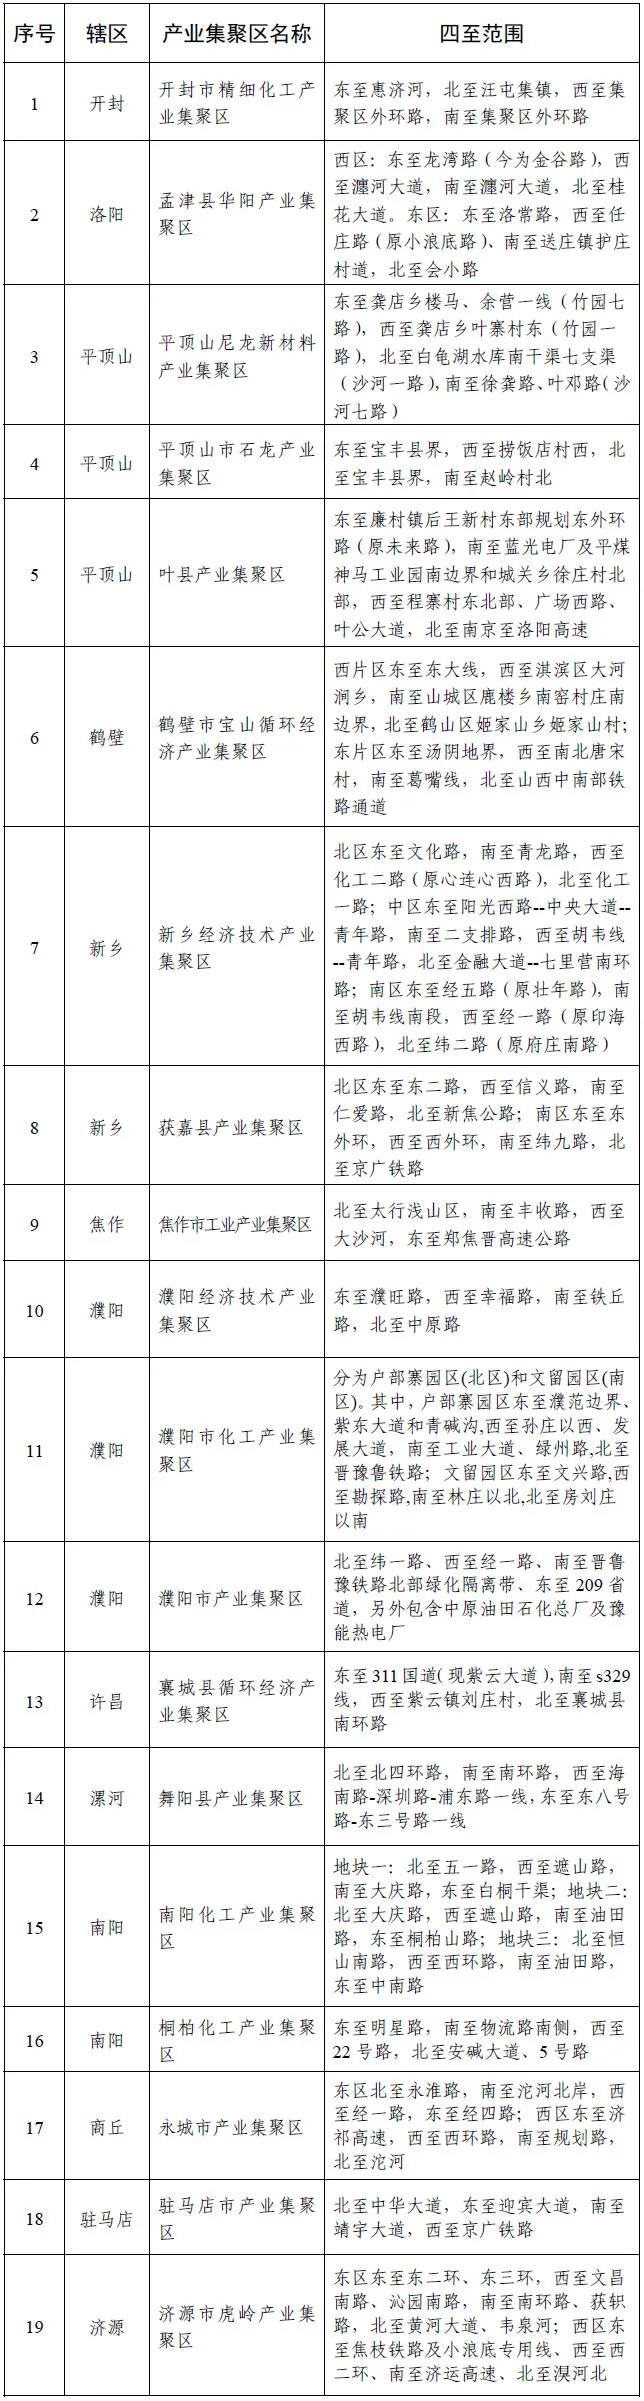 河南省公示化工类产业集聚区19家、专业化工园有8家